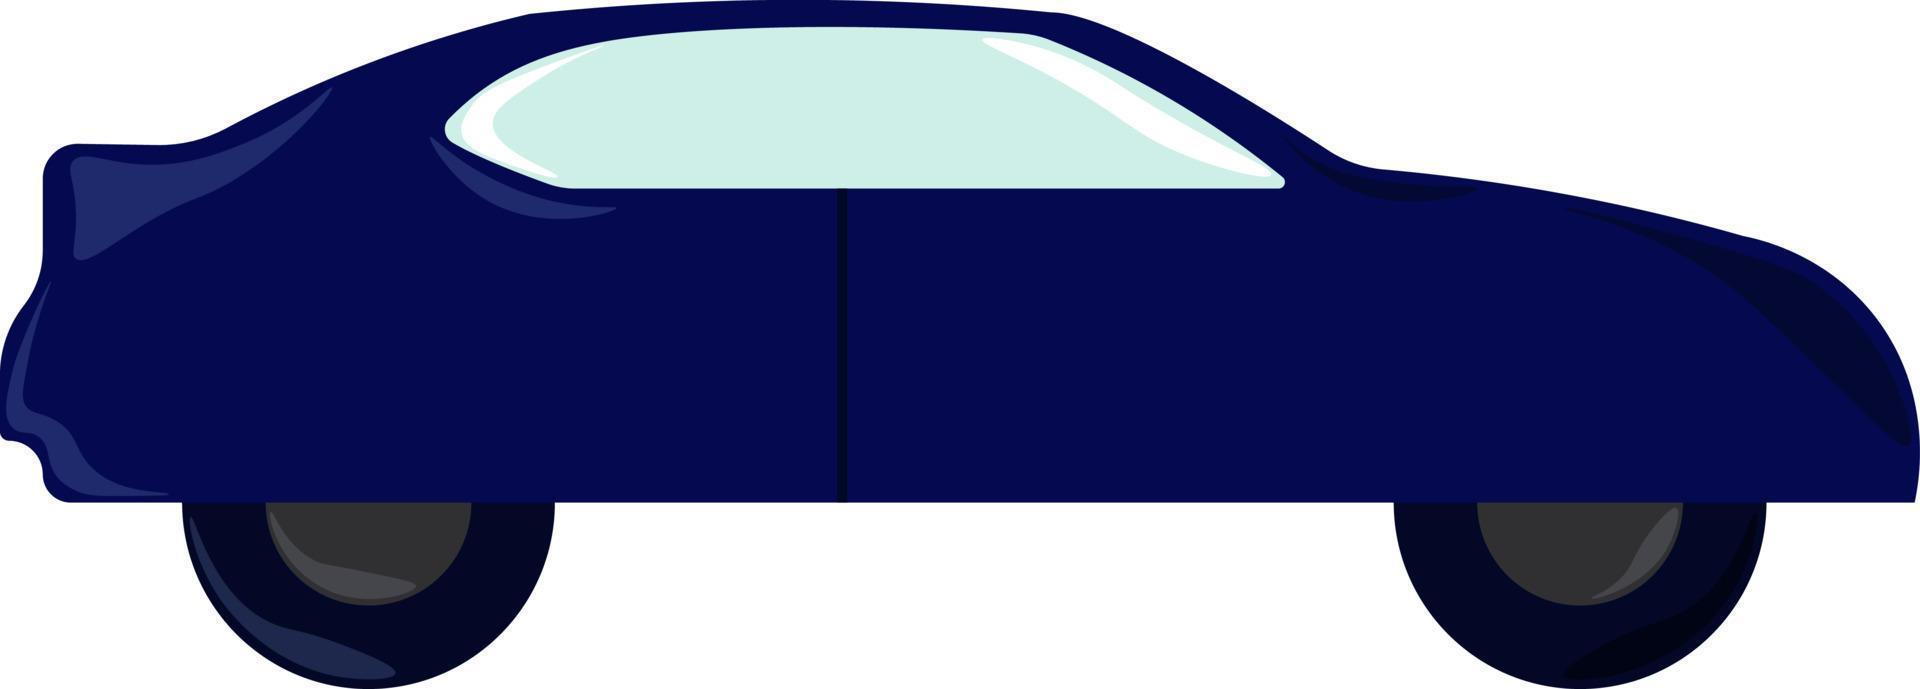 blå bil, illustration, vektor på vit bakgrund.